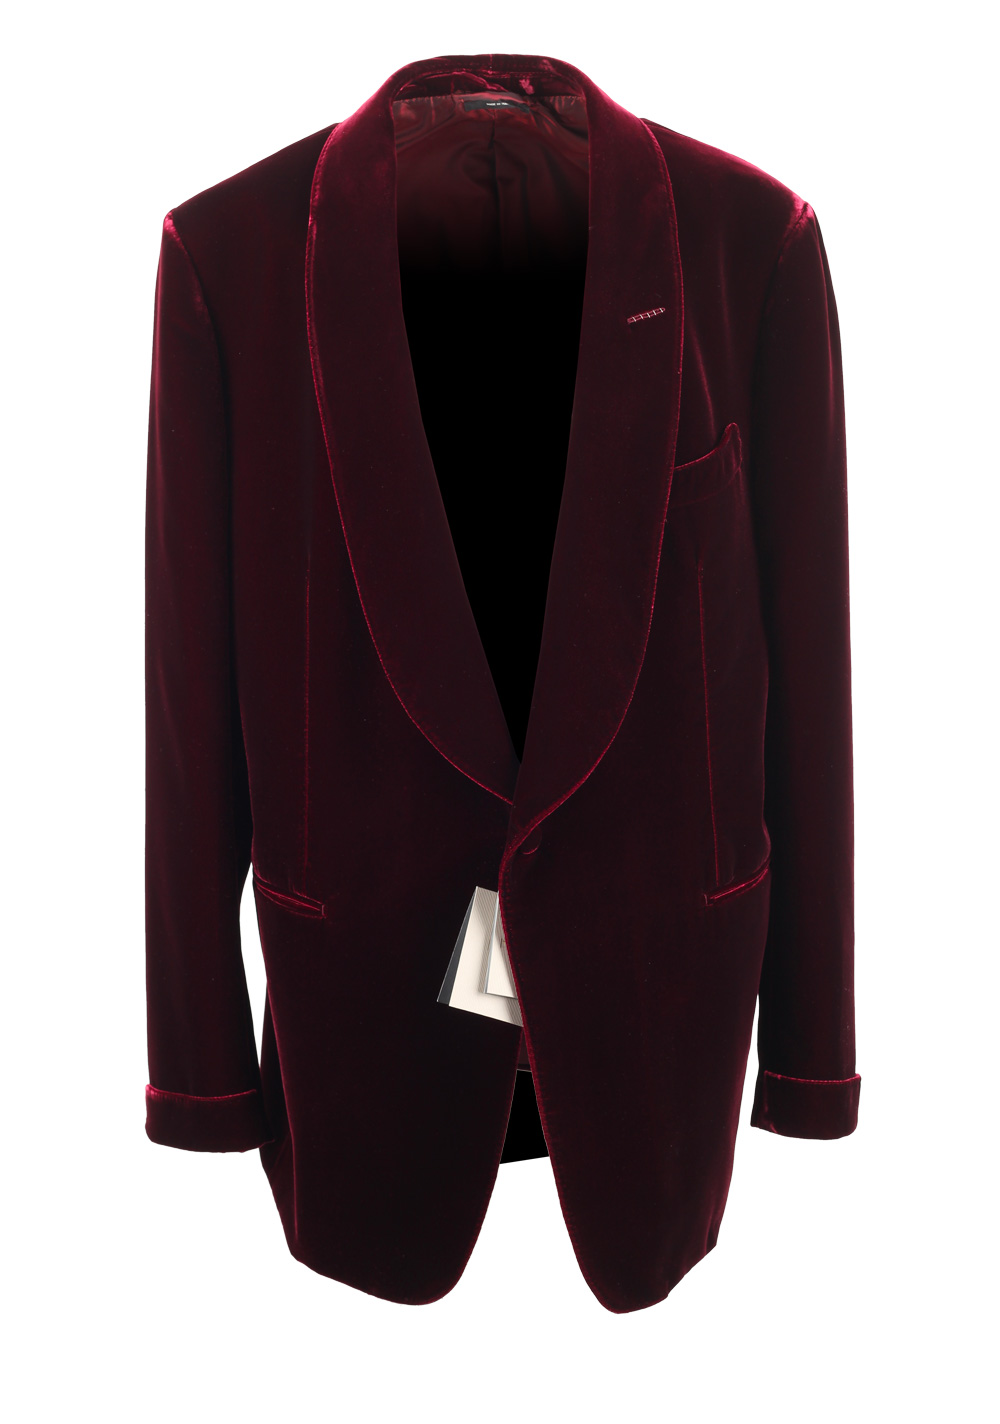 TOM FORD Shelton Velvet Red Sport Coat Tuxedo Dinner Jacket Size Size ...